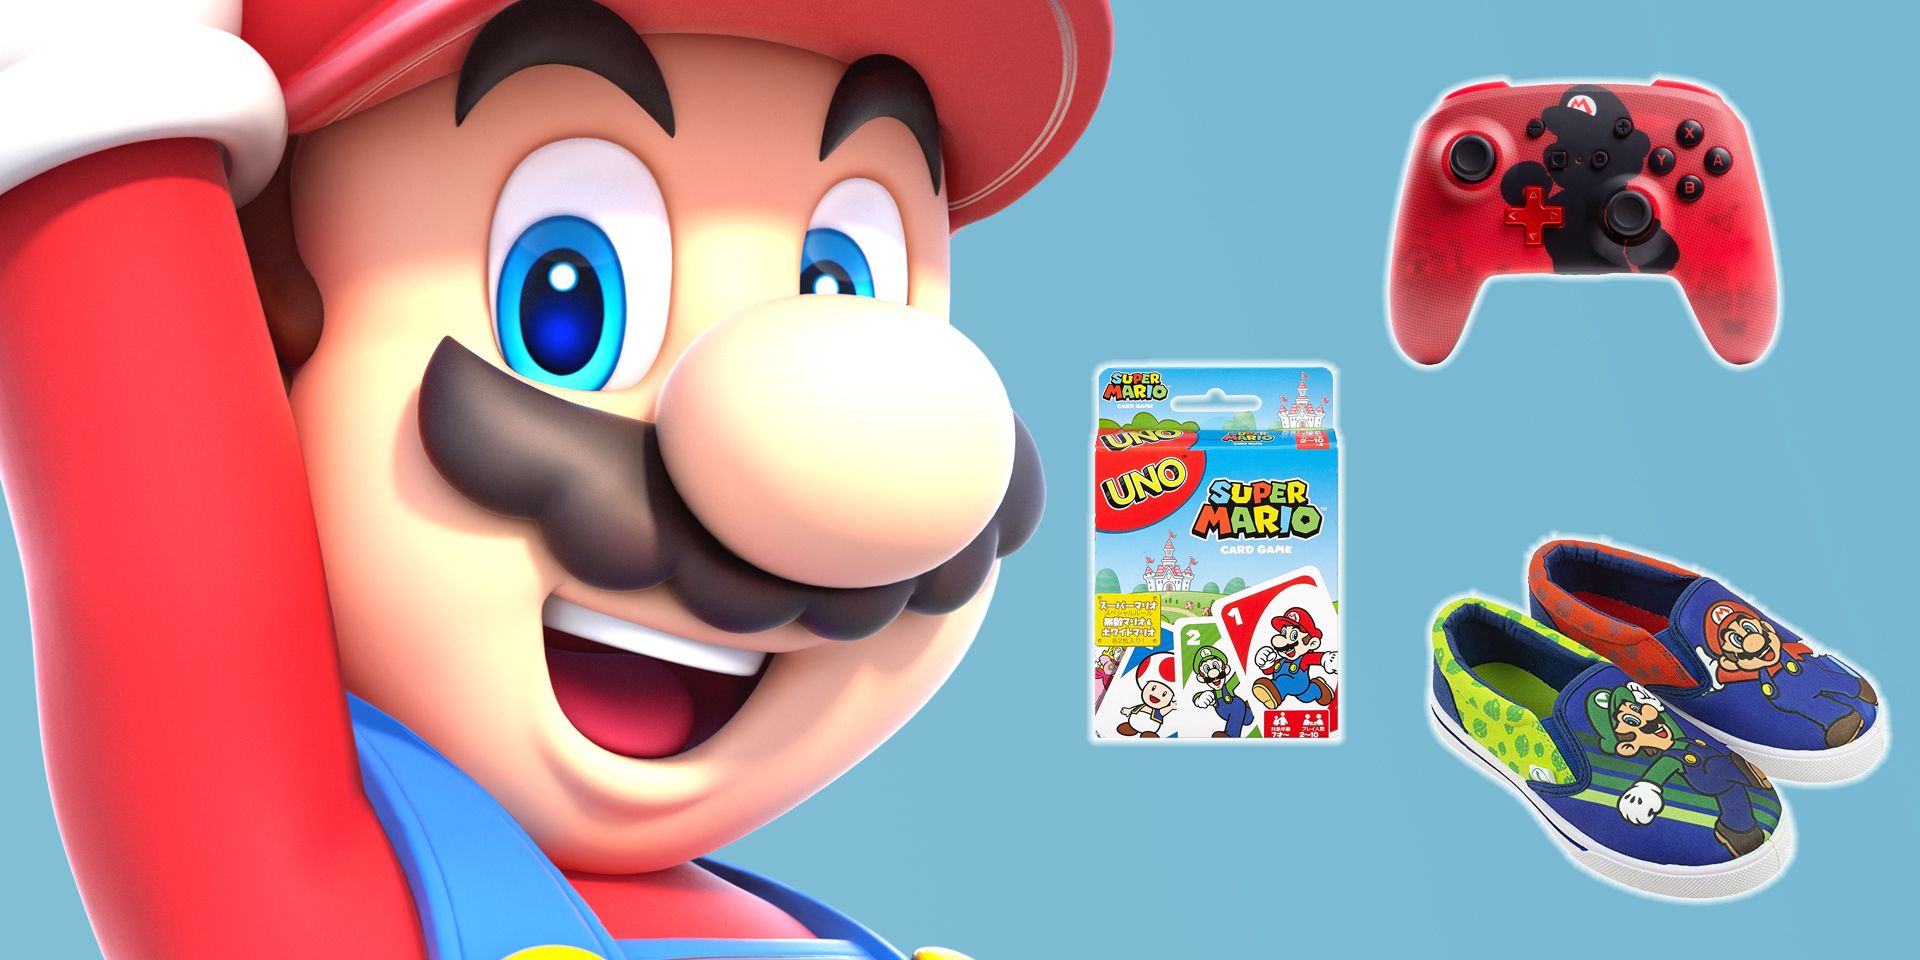 New UNO Super Mario Bros. (Nintendo) Card Game, Includes a Special